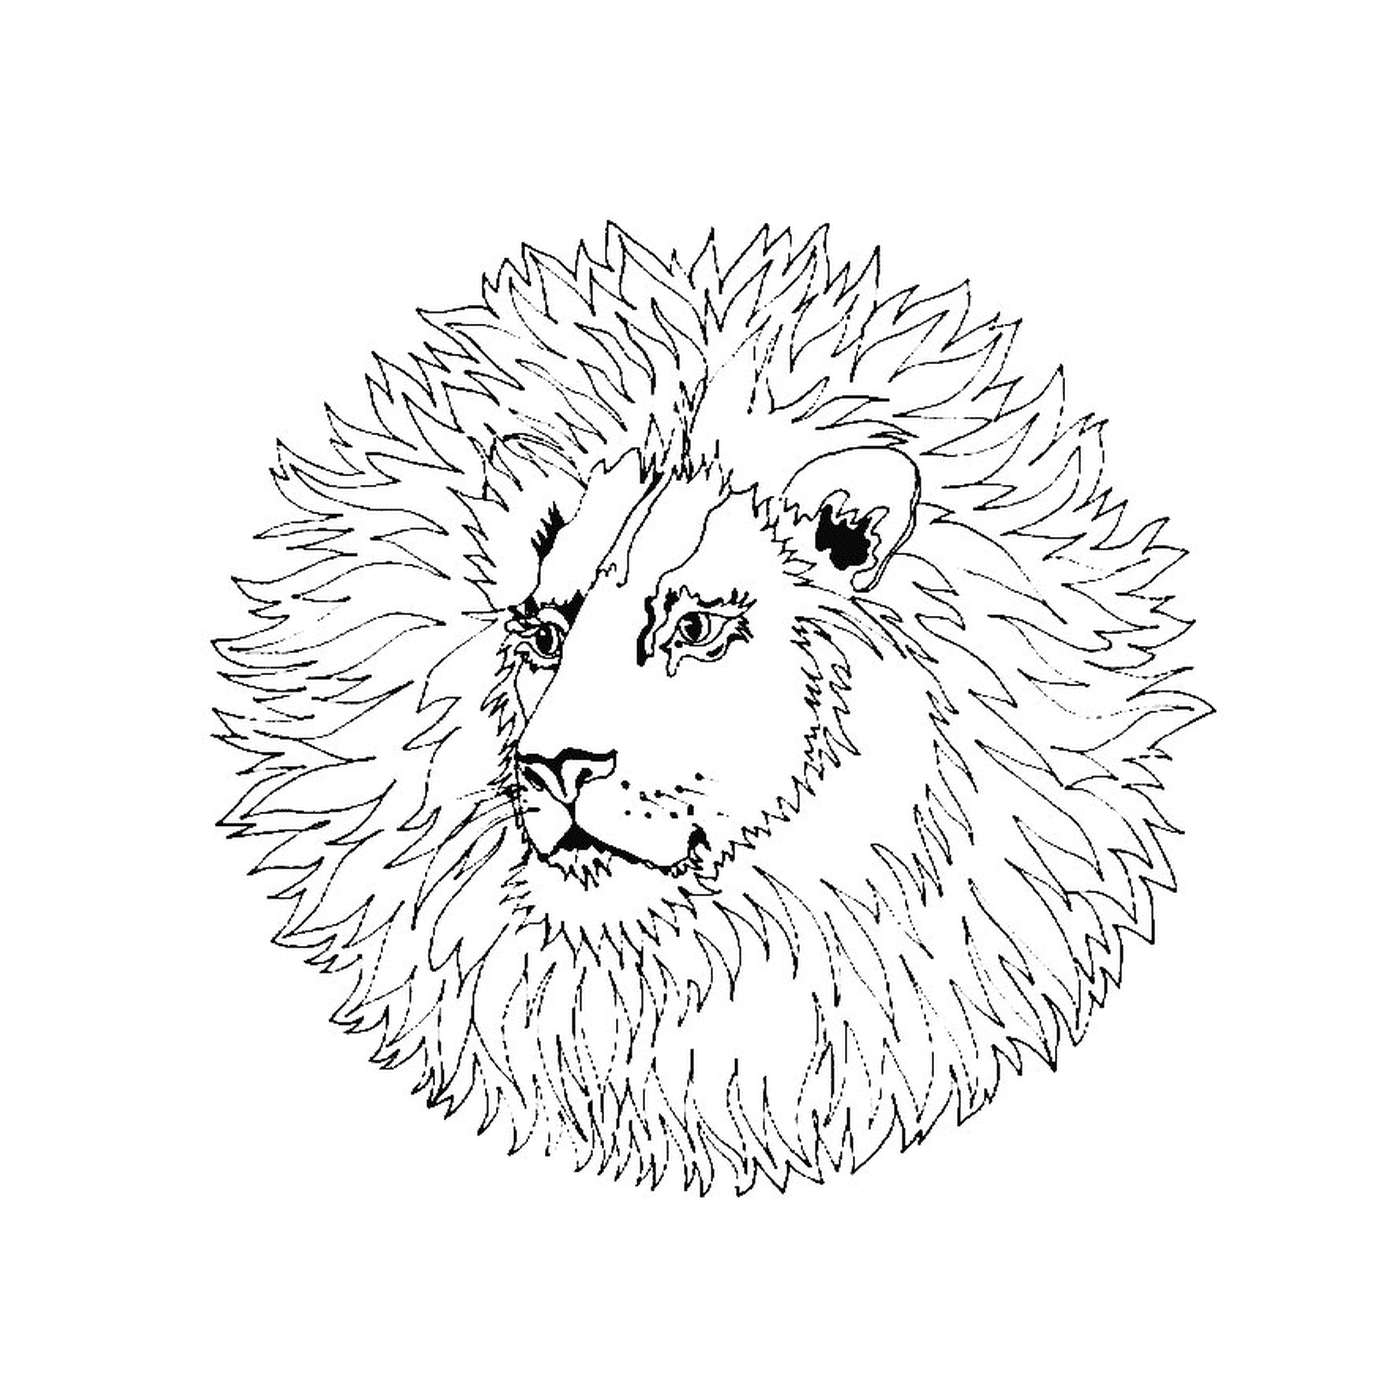  Majes Majes Majes Majestic Leão Leão 